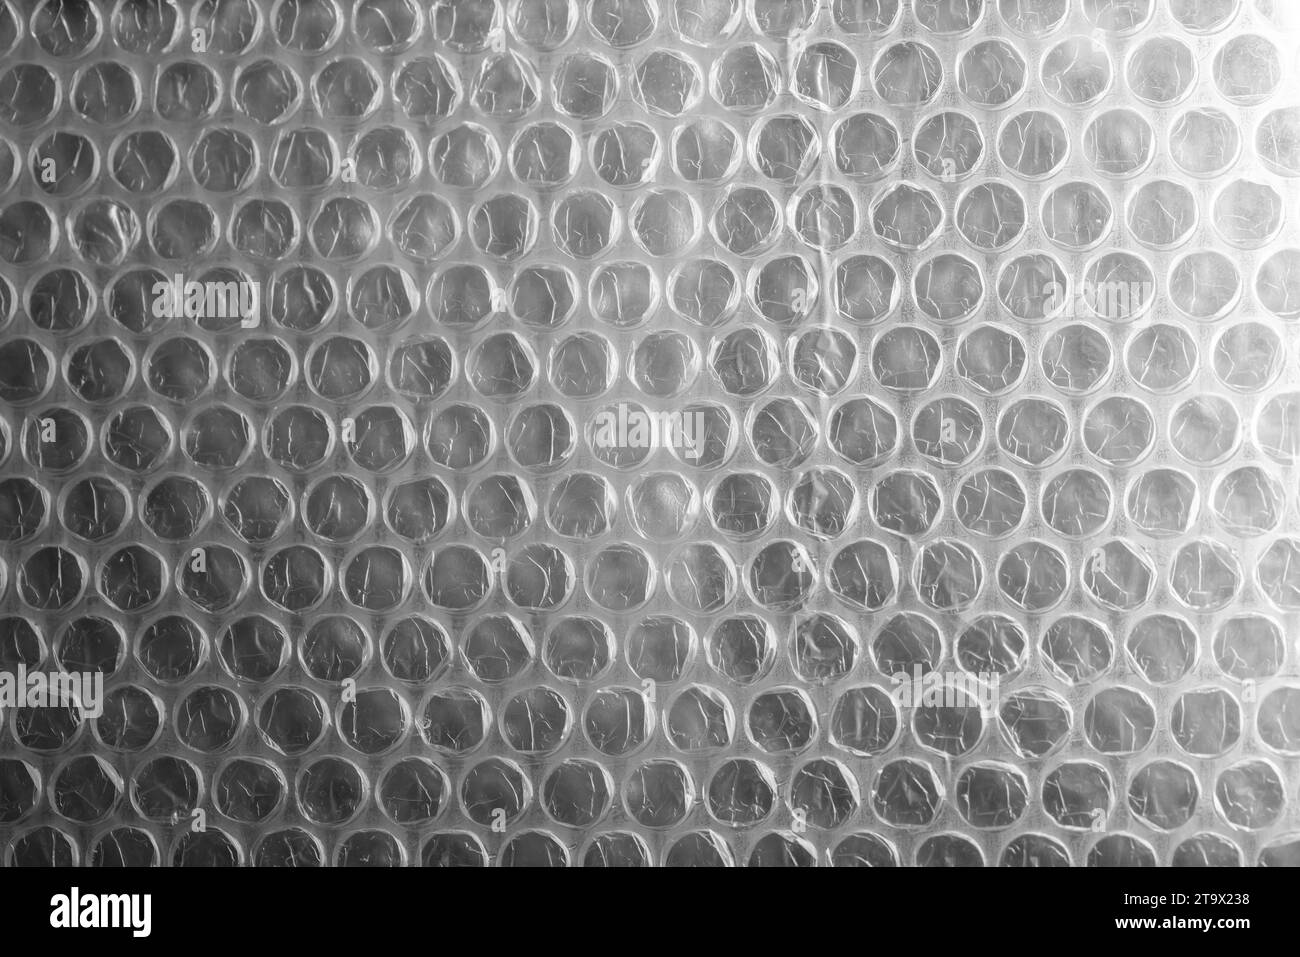 Luftpolsterfolie, Nahaufnahme Hintergrundfoto. Es handelt sich um ein biegsames, transparentes Kunststoffmaterial mit Luftblasen, das zum Verpacken zerbrechlicher Gegenstände verwendet wird Stockfoto